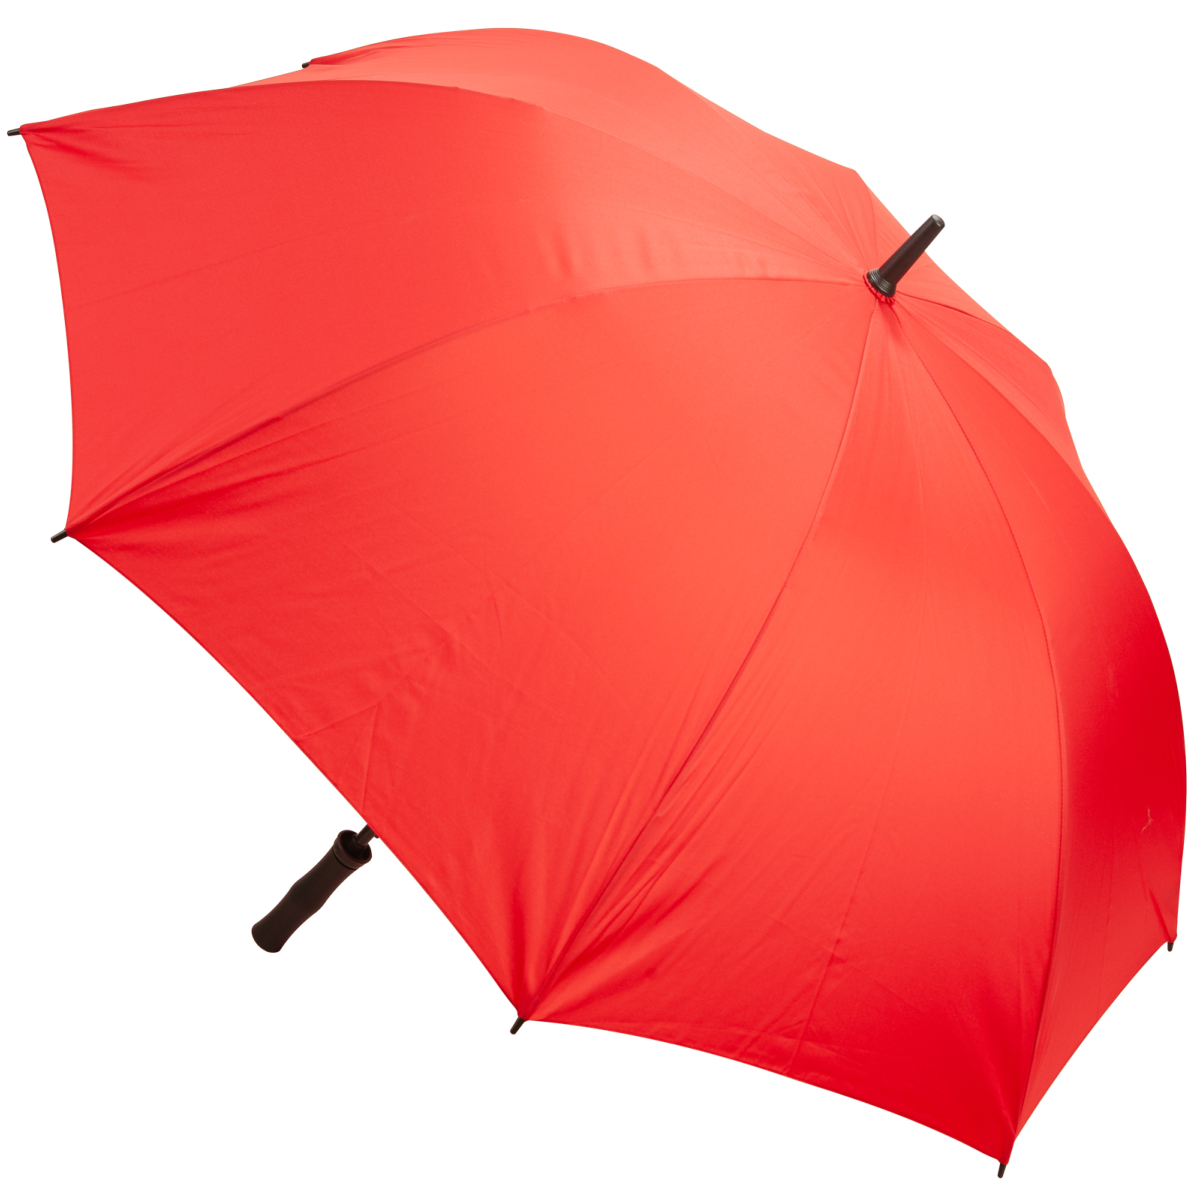 Premium Fibreglass Golf Umbrella - Red